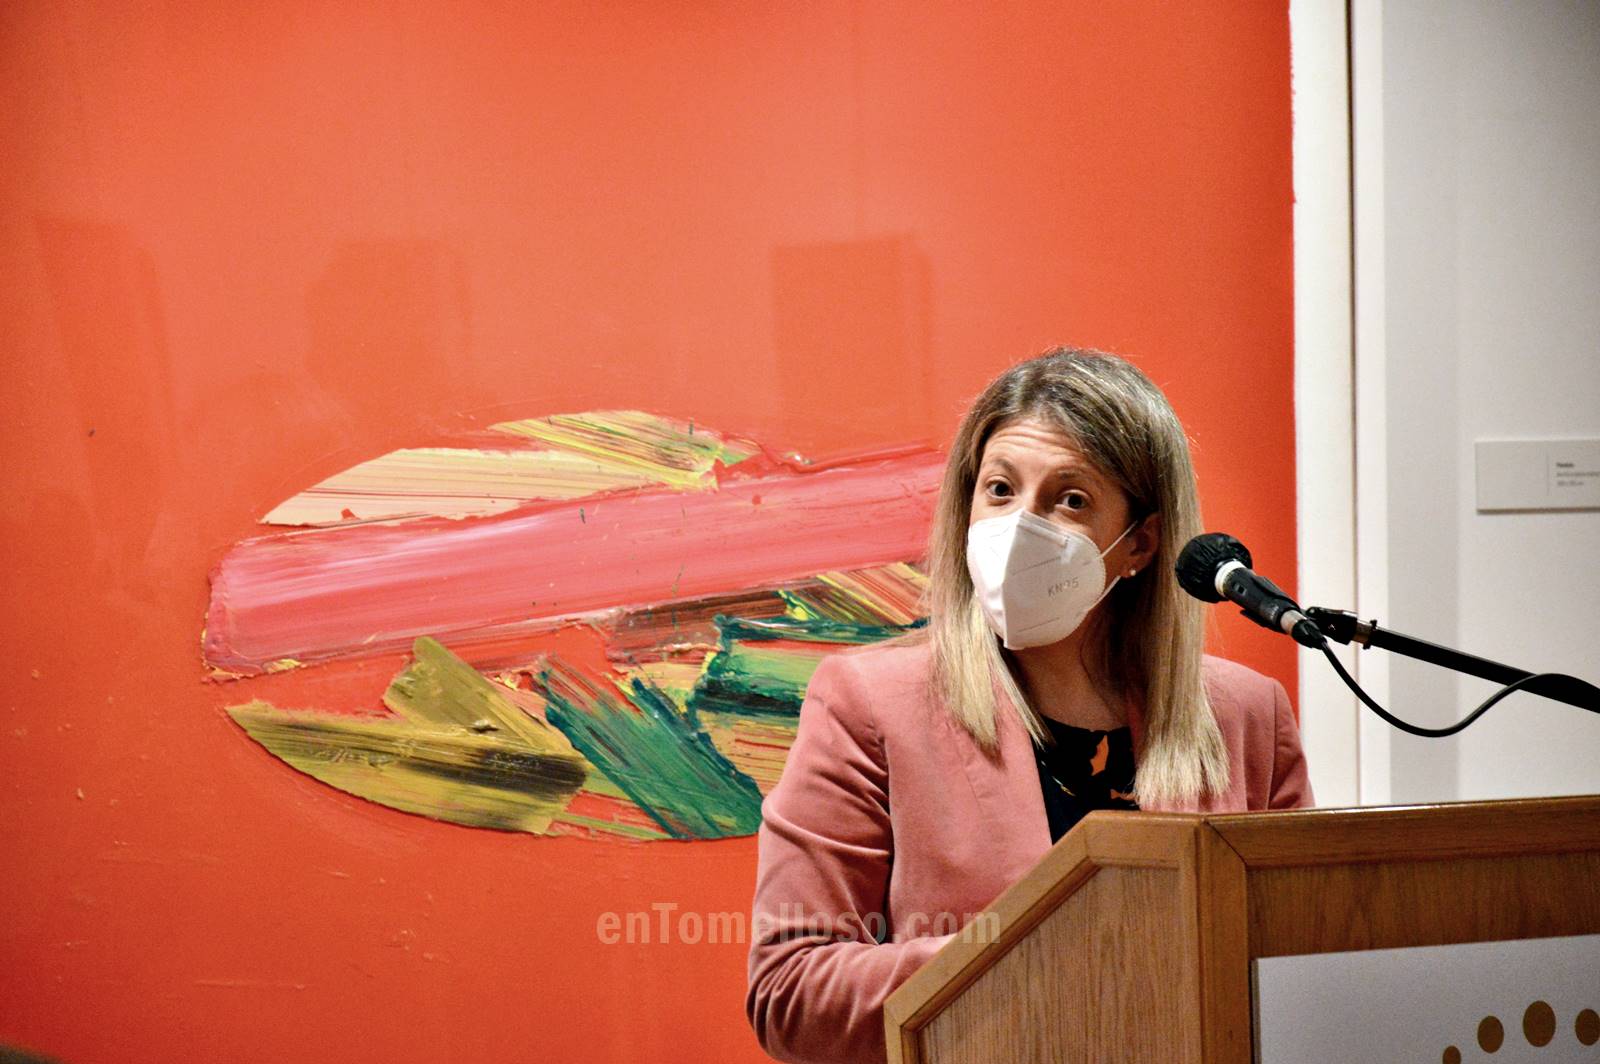 El Museo Infanta Elena de Tomelloso acoge la exposición "Renacido", del artista internacional Rafael Canogar